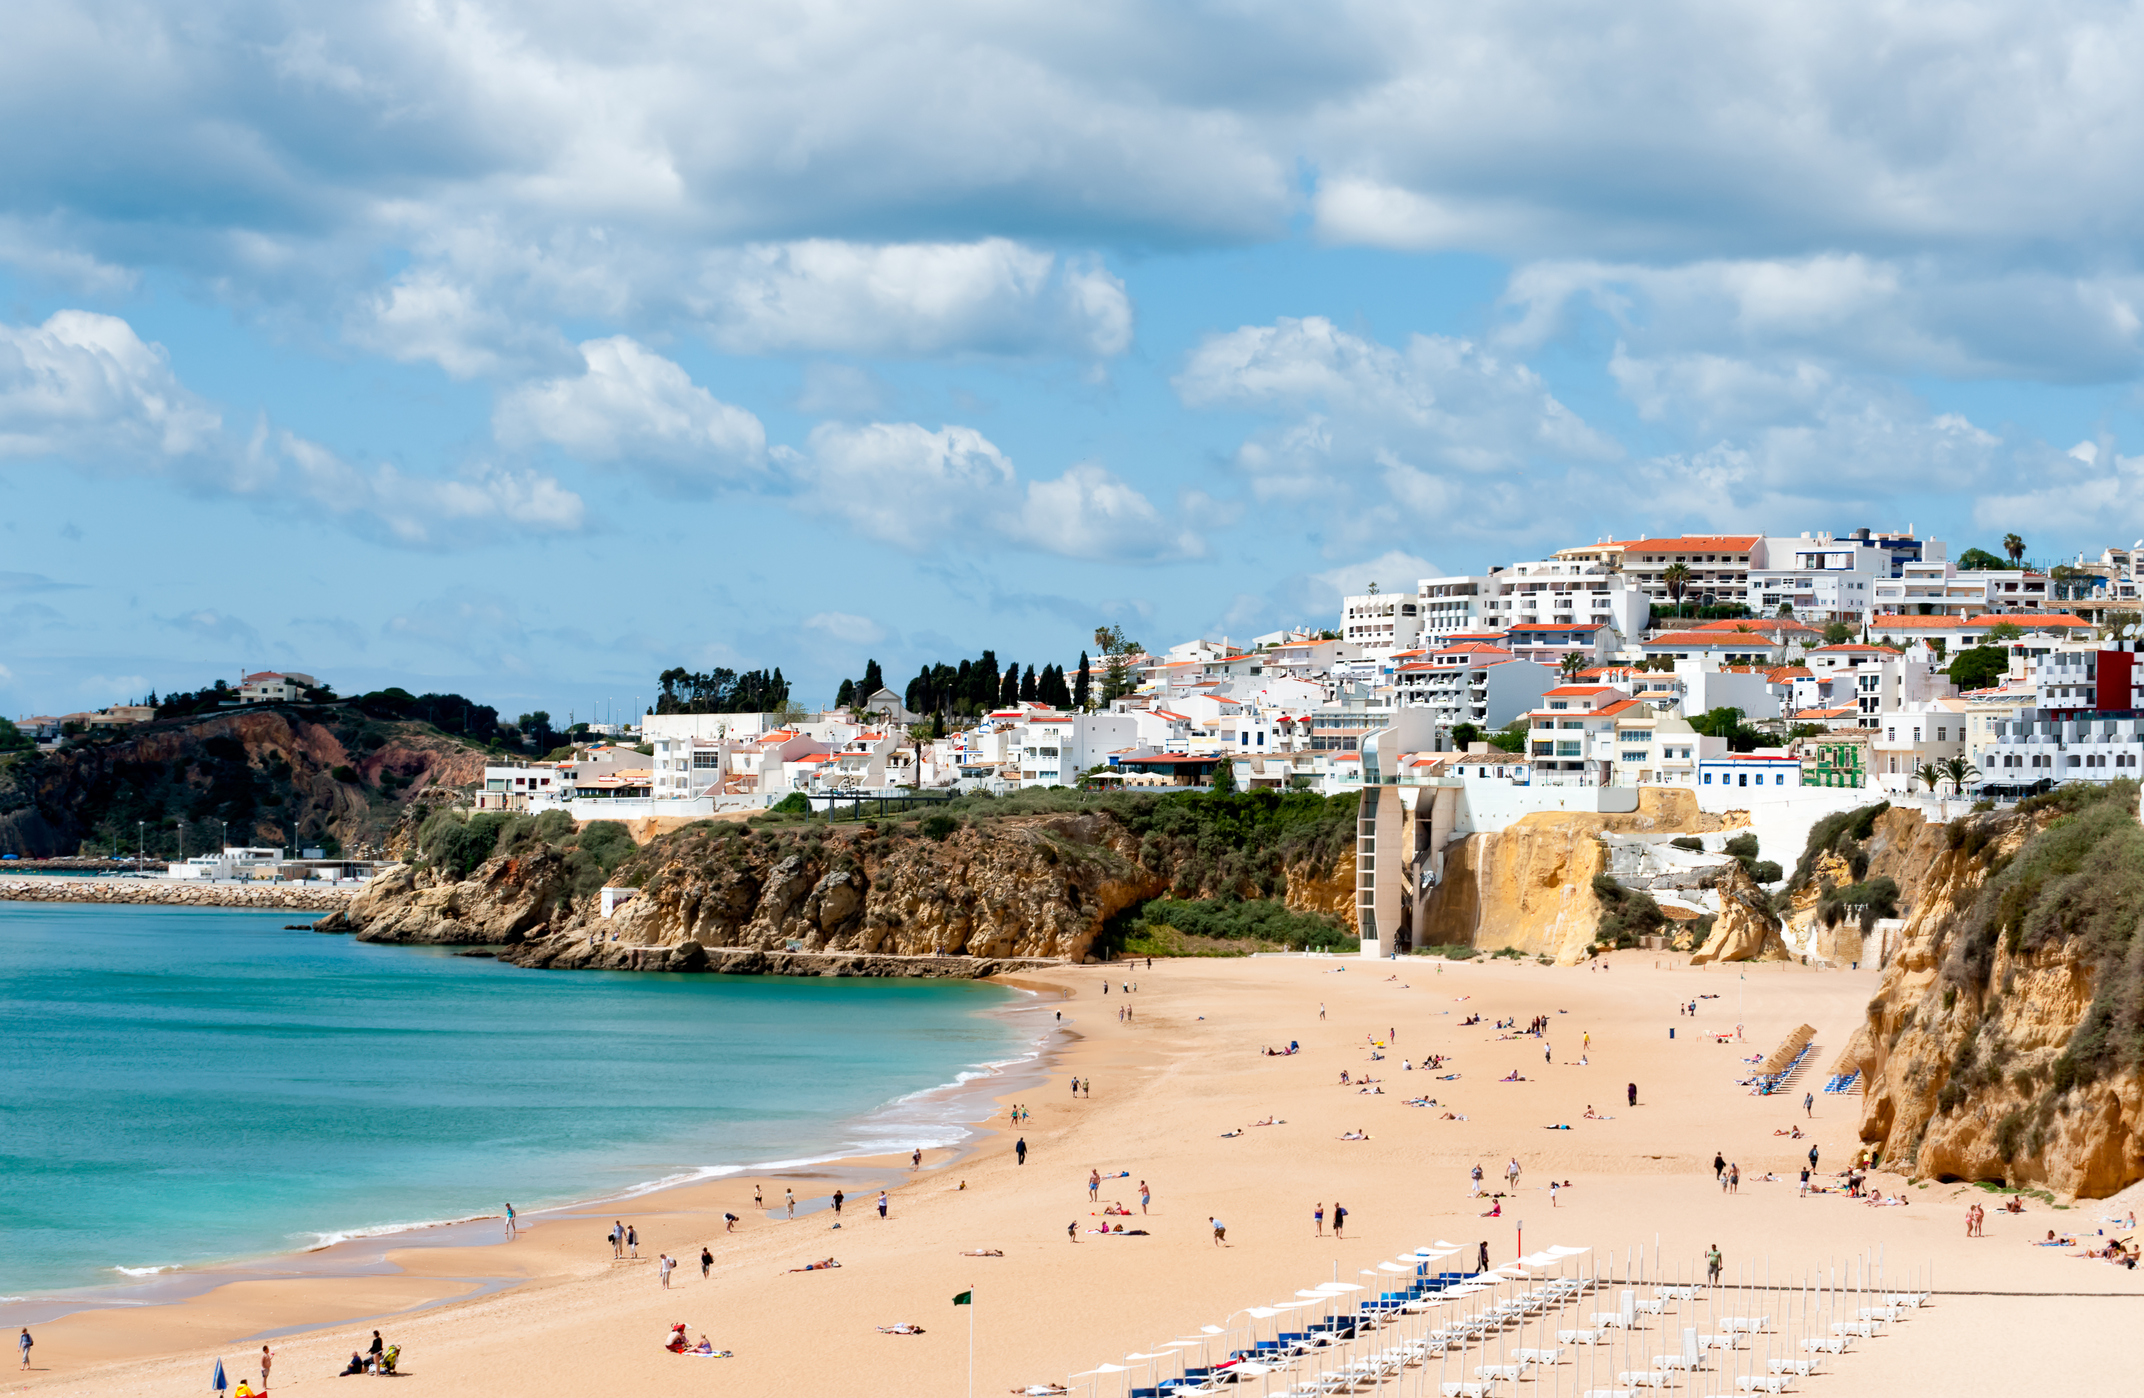 Пляж Castelo в Албуфейре, Португалия
